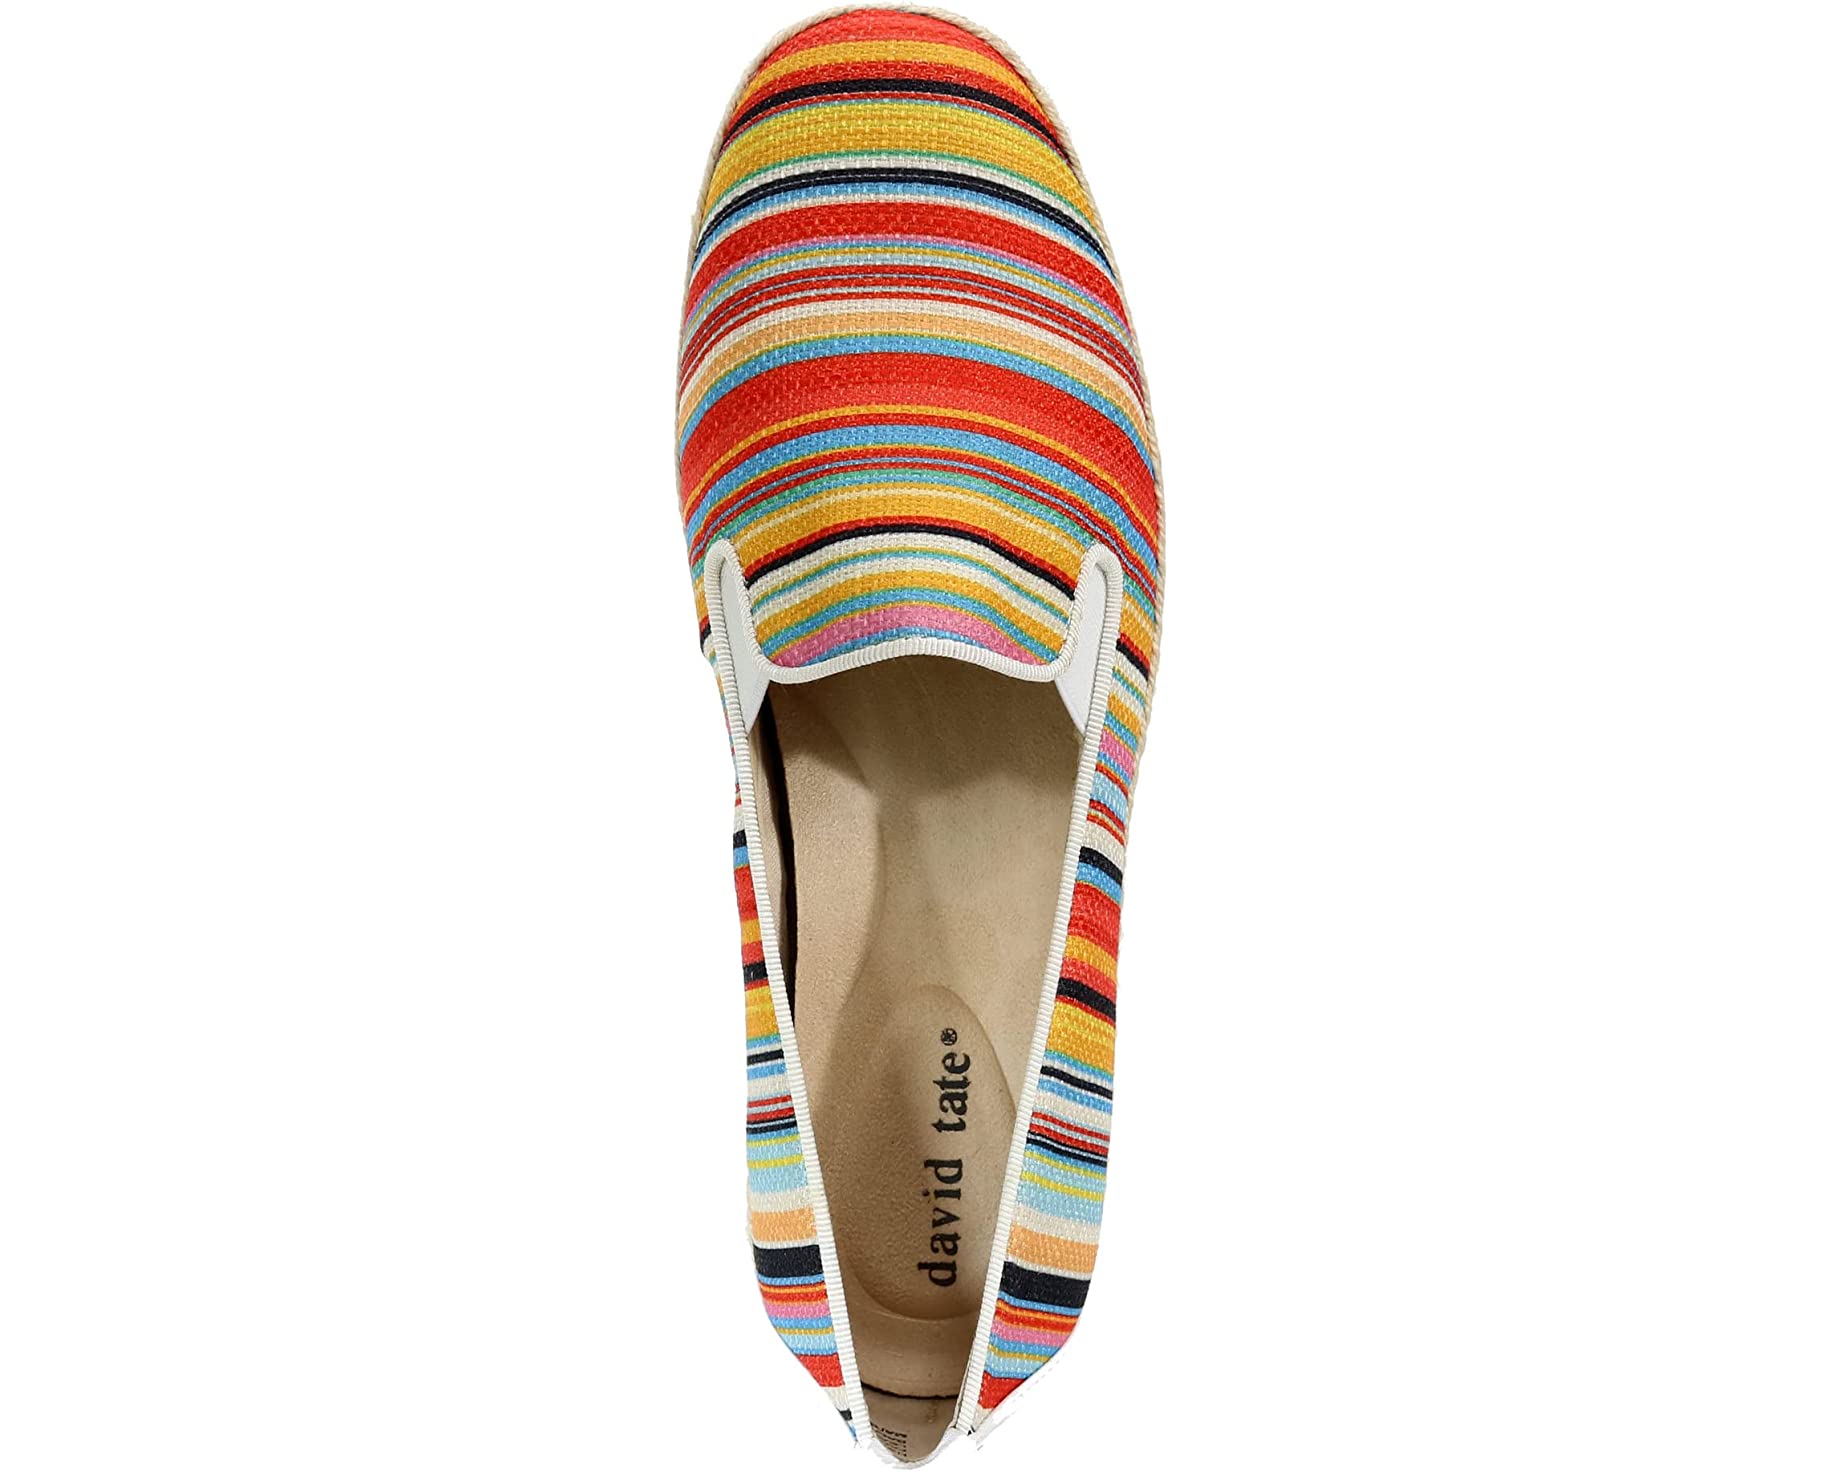 Туфли на каблуках Kindle David Tate, яркие разноцветные полосы